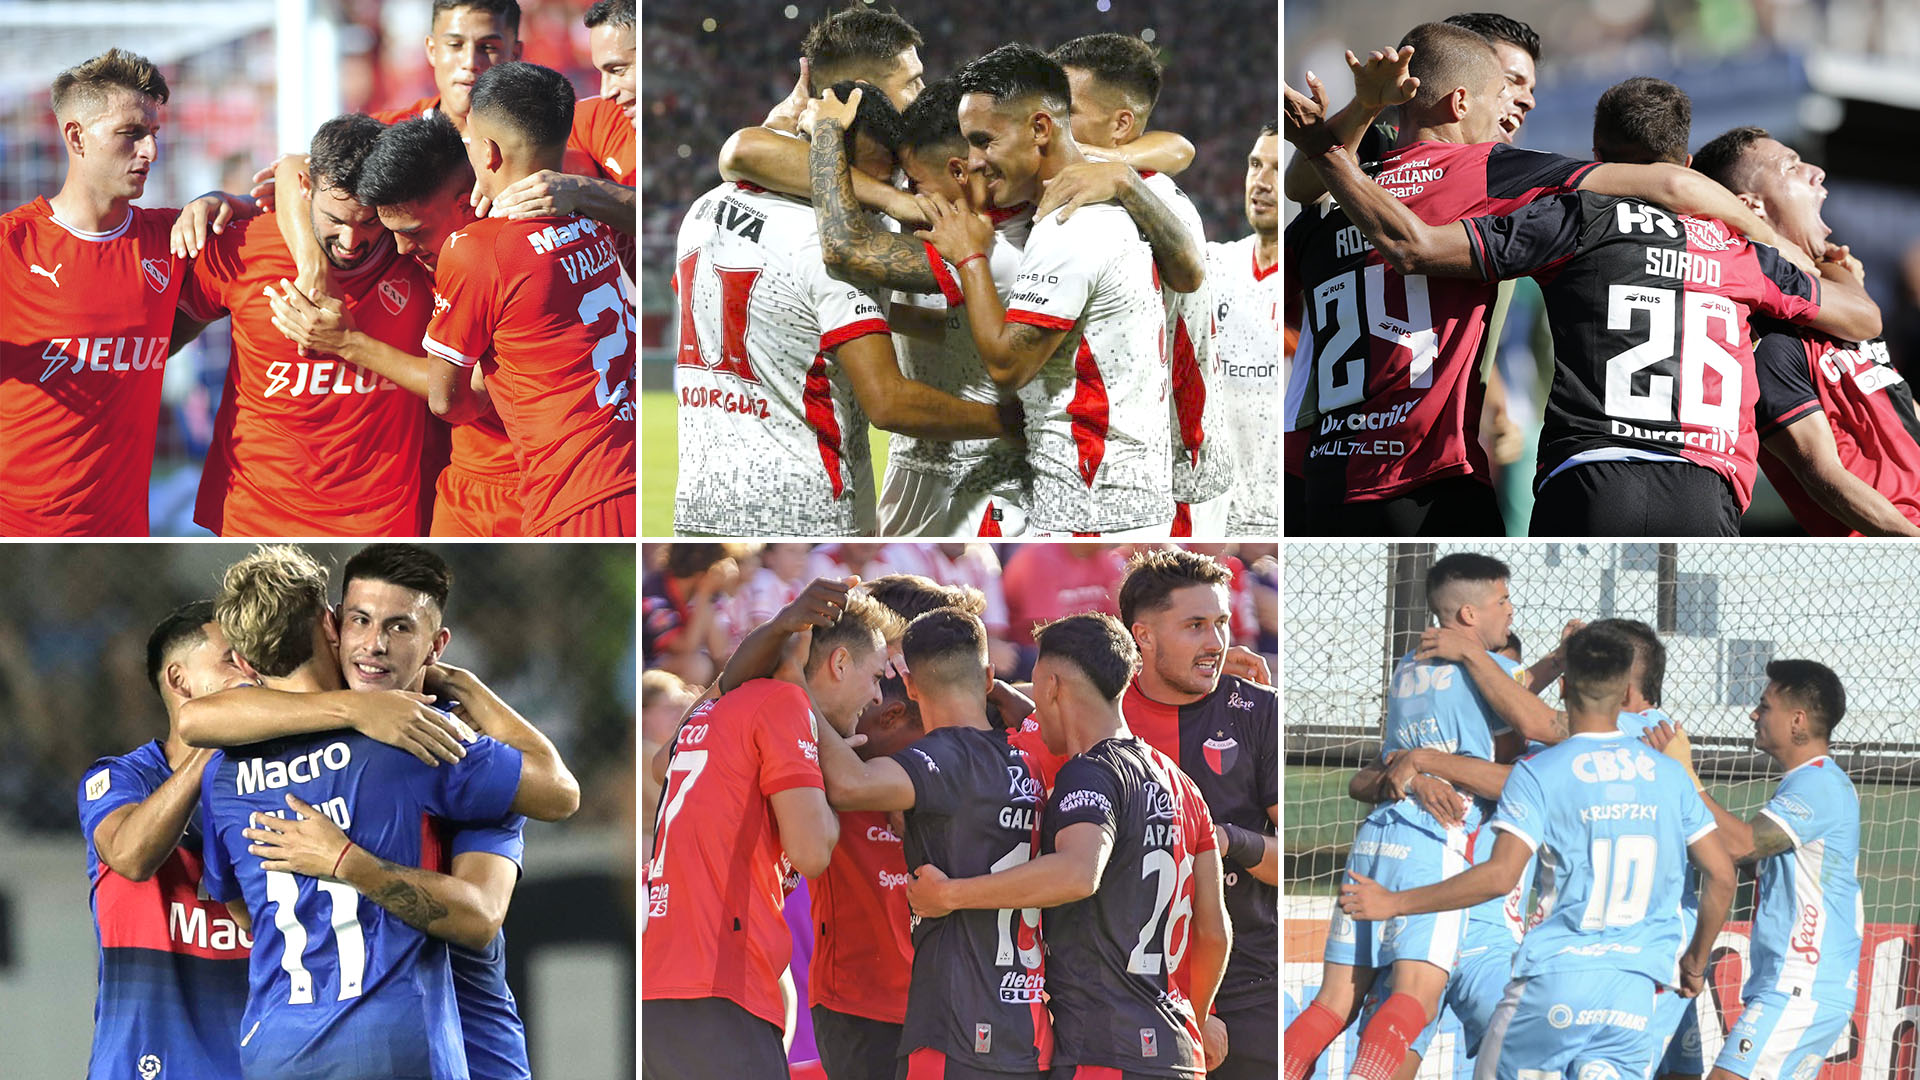  Independiente-Tigre, Instituto-Colón y Newell's-Arsenal, los otros partidos del día